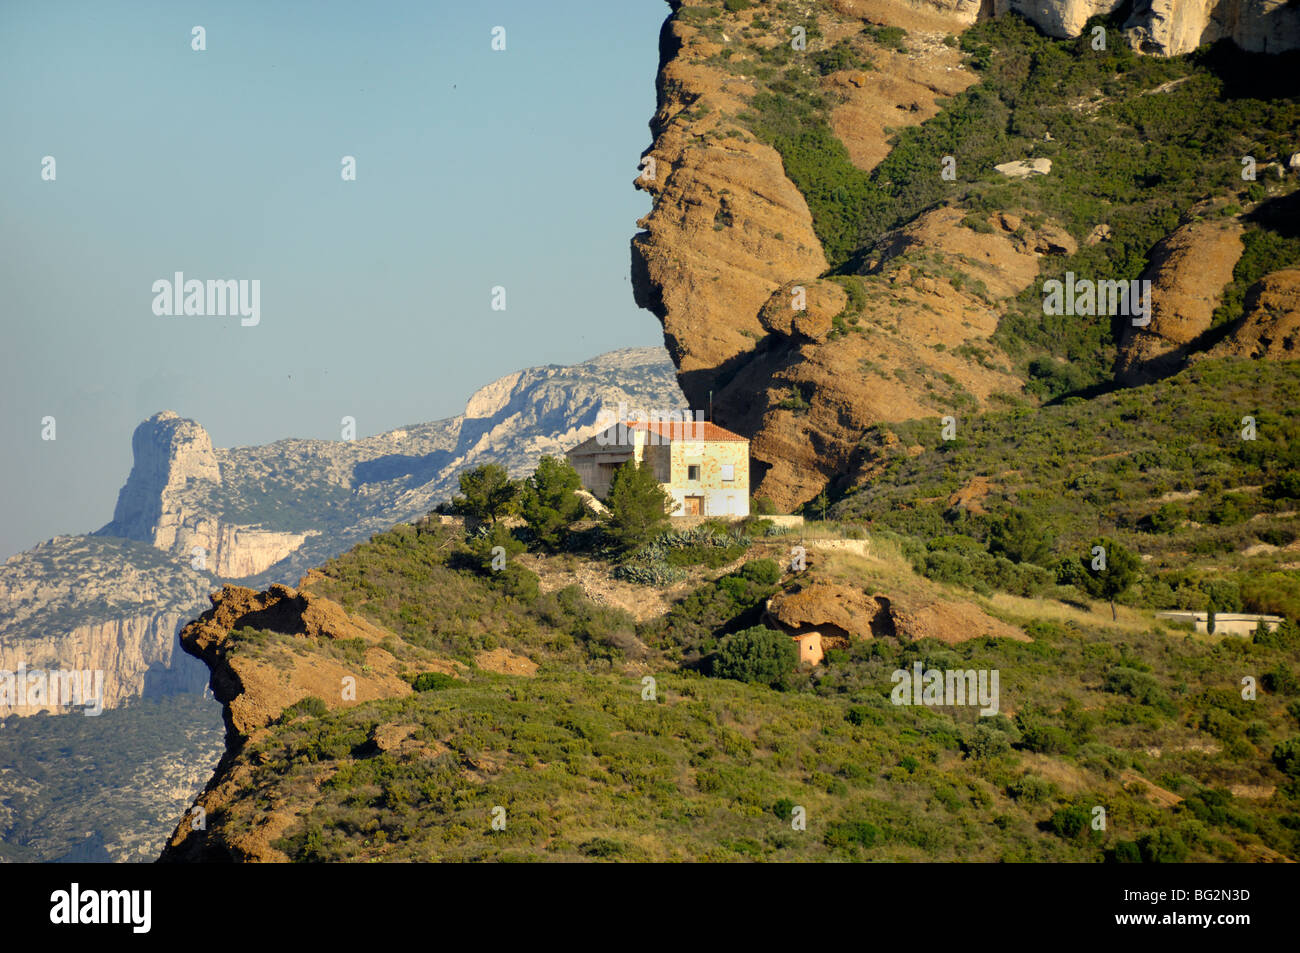 Casa sul bordo delle scogliere sul mare o Cliff Edge, vicino a La Ciotat, Provenza, Francia Foto Stock